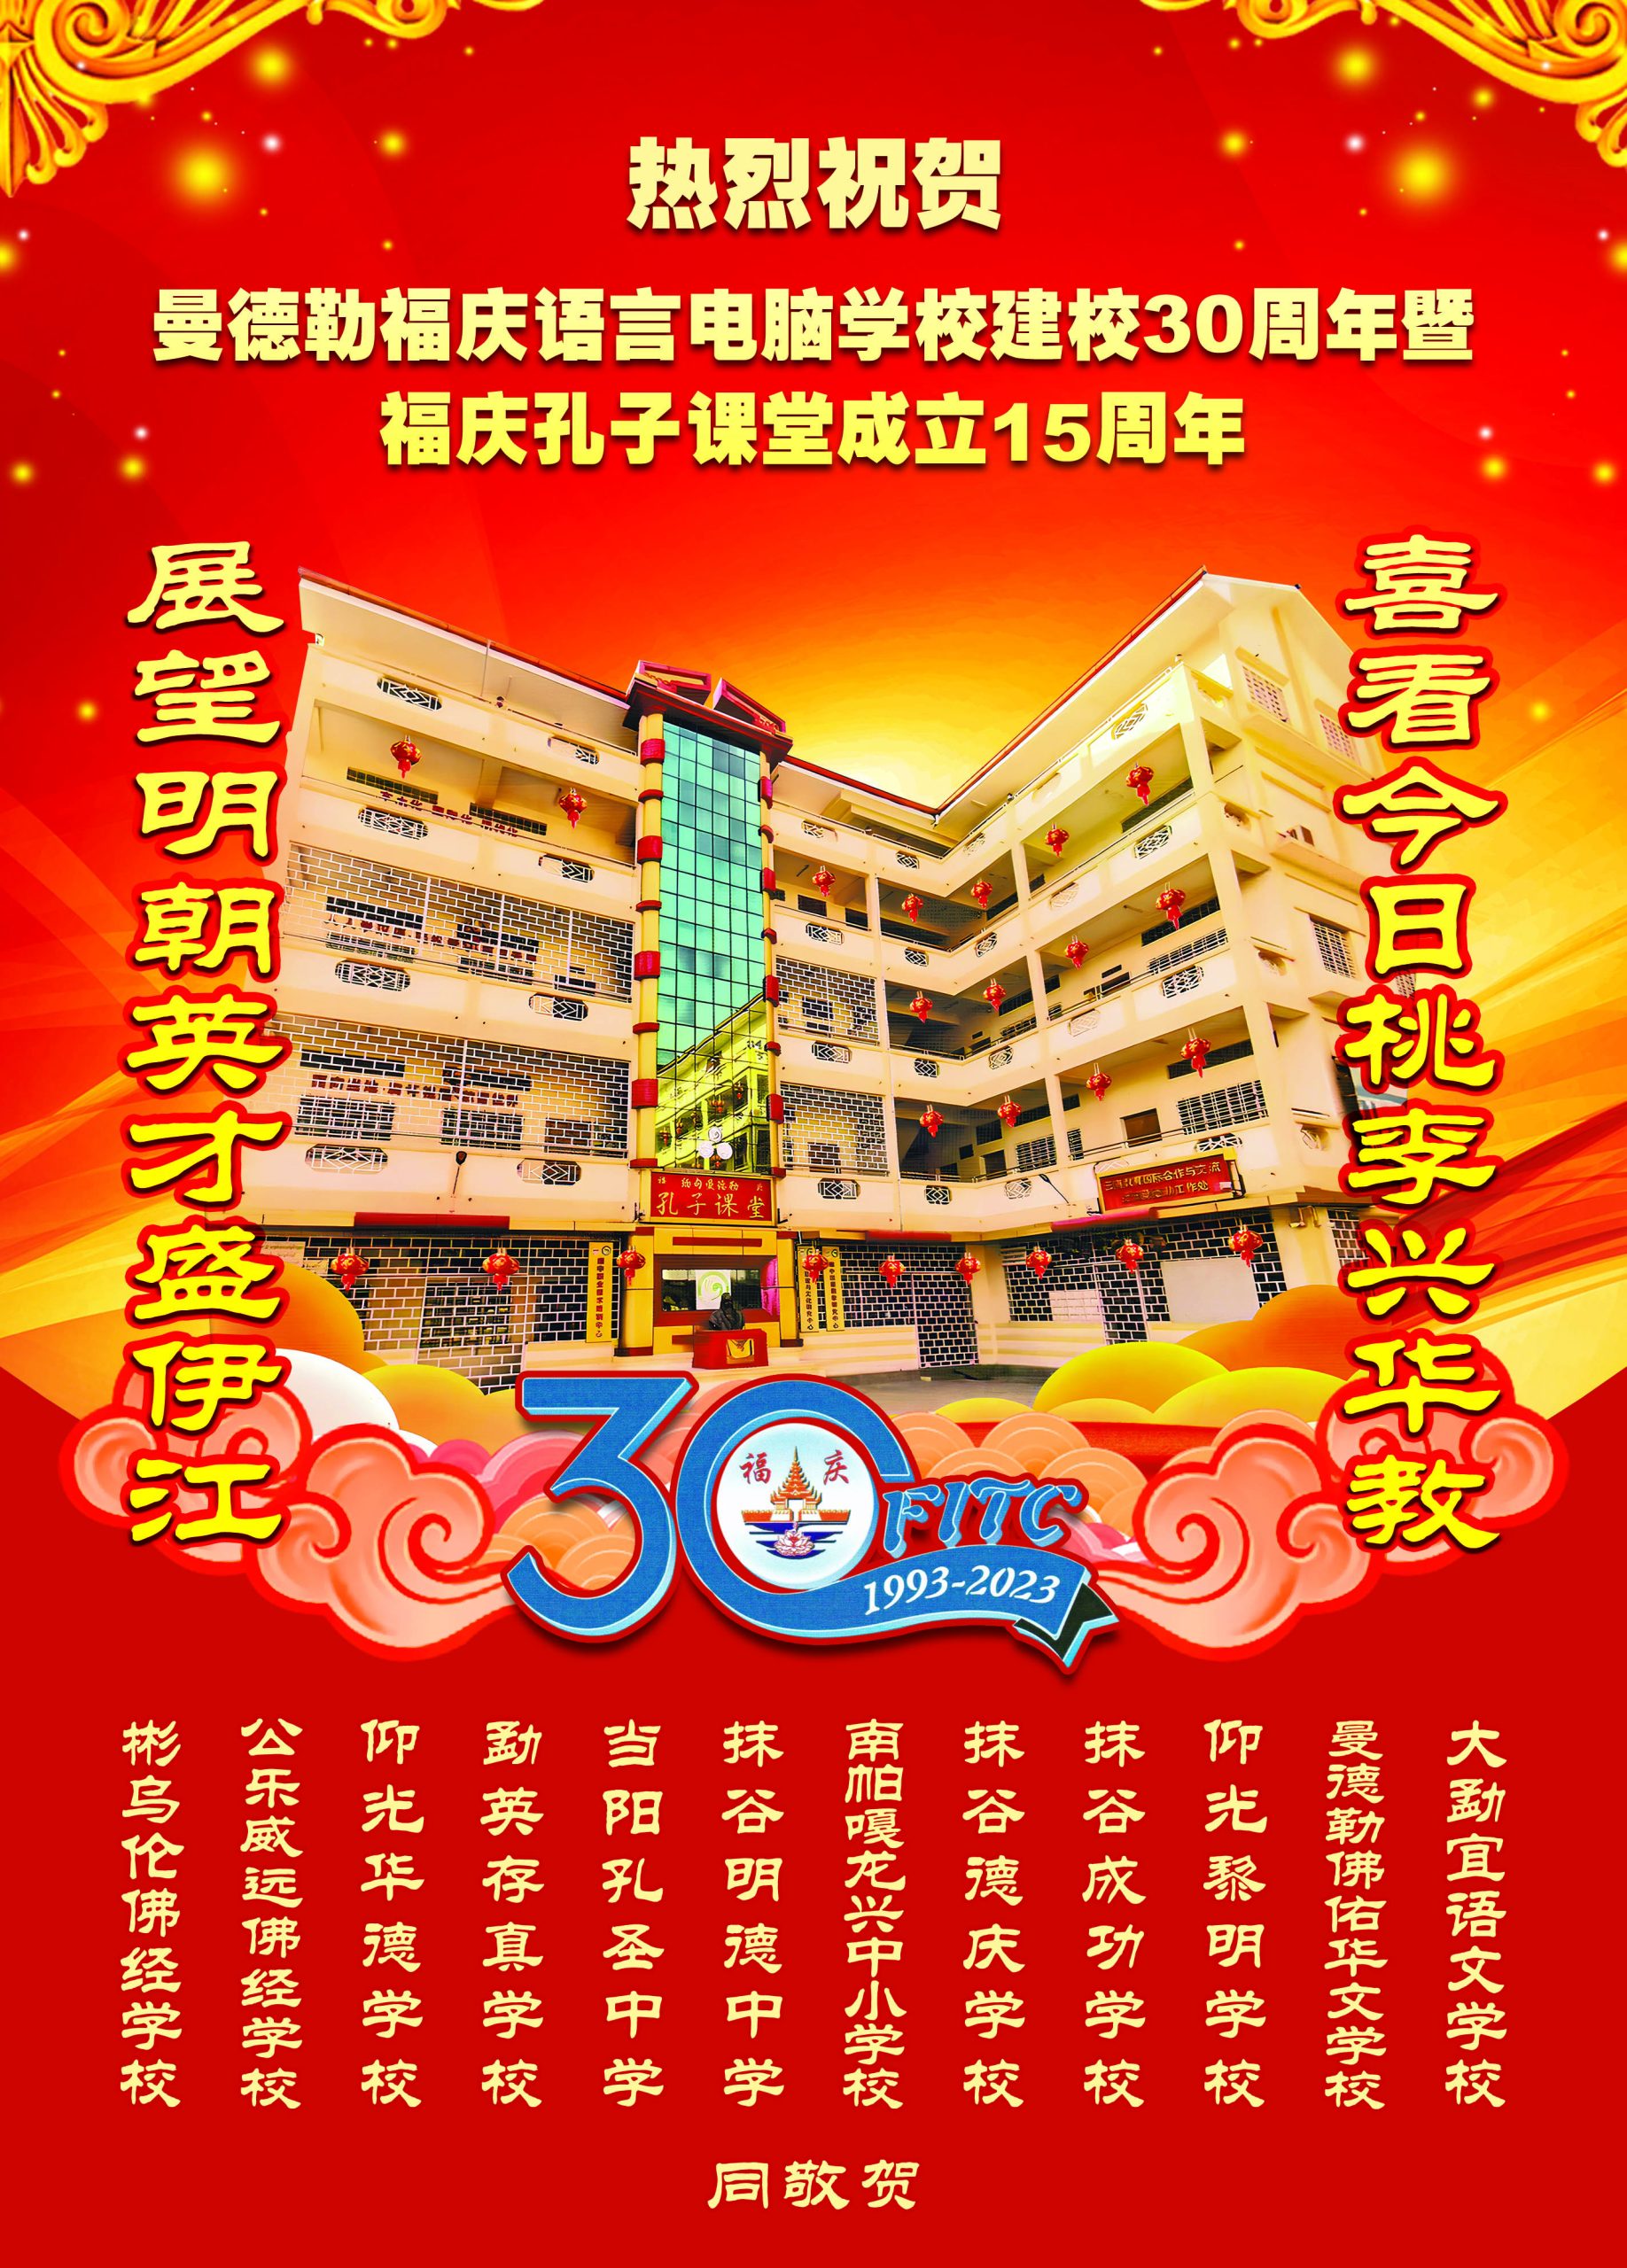 缅甸福庆学校建校30周年暨福庆孔子课堂成立15周年庆